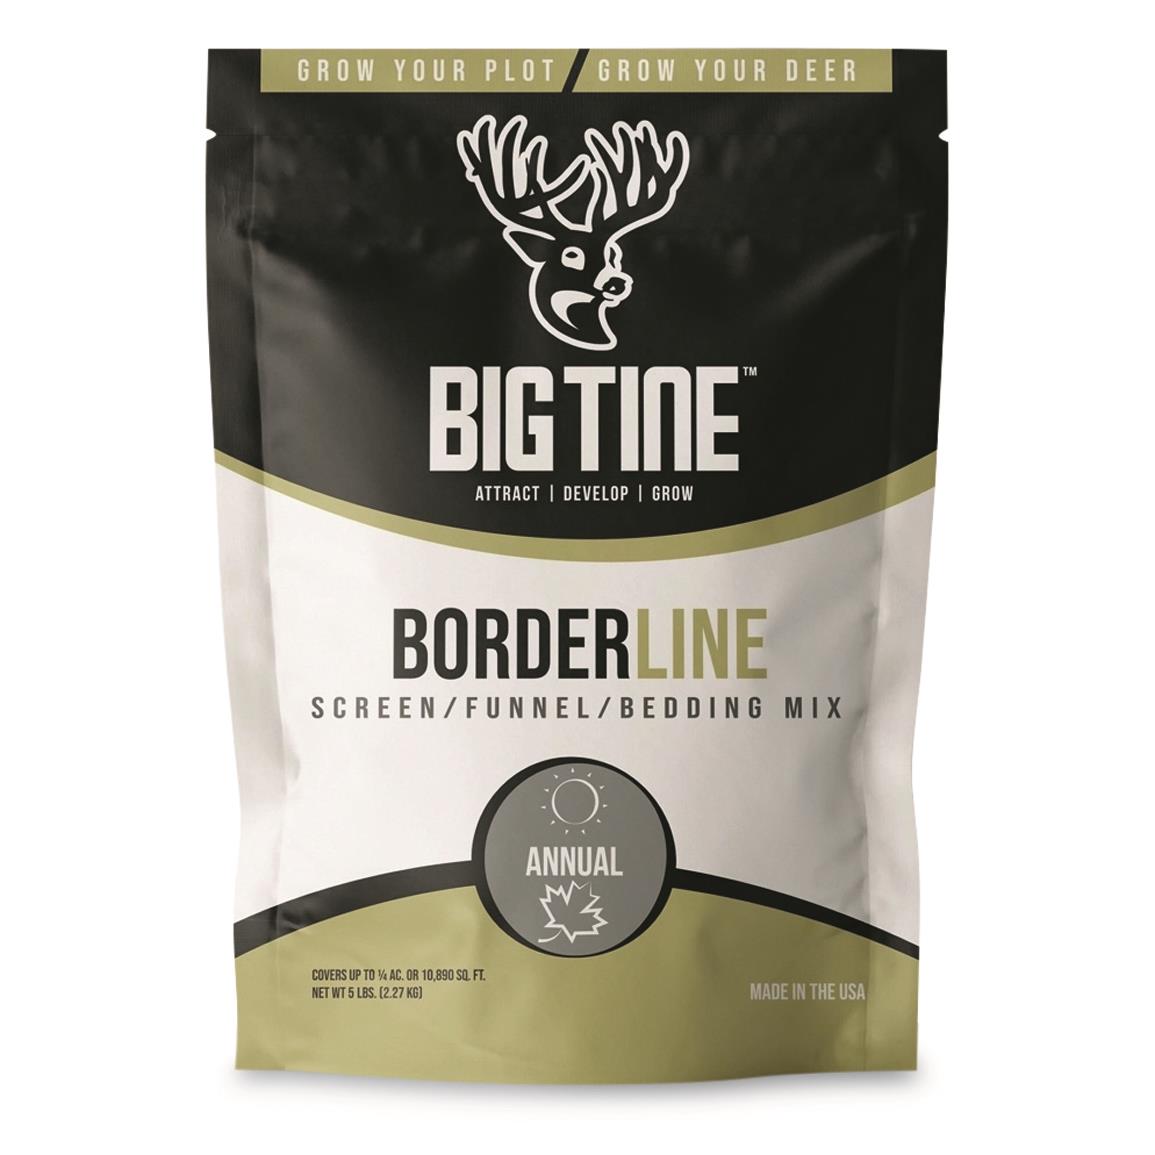 Big Tine Borderline Food Plot Seed, 5 lb. Bag